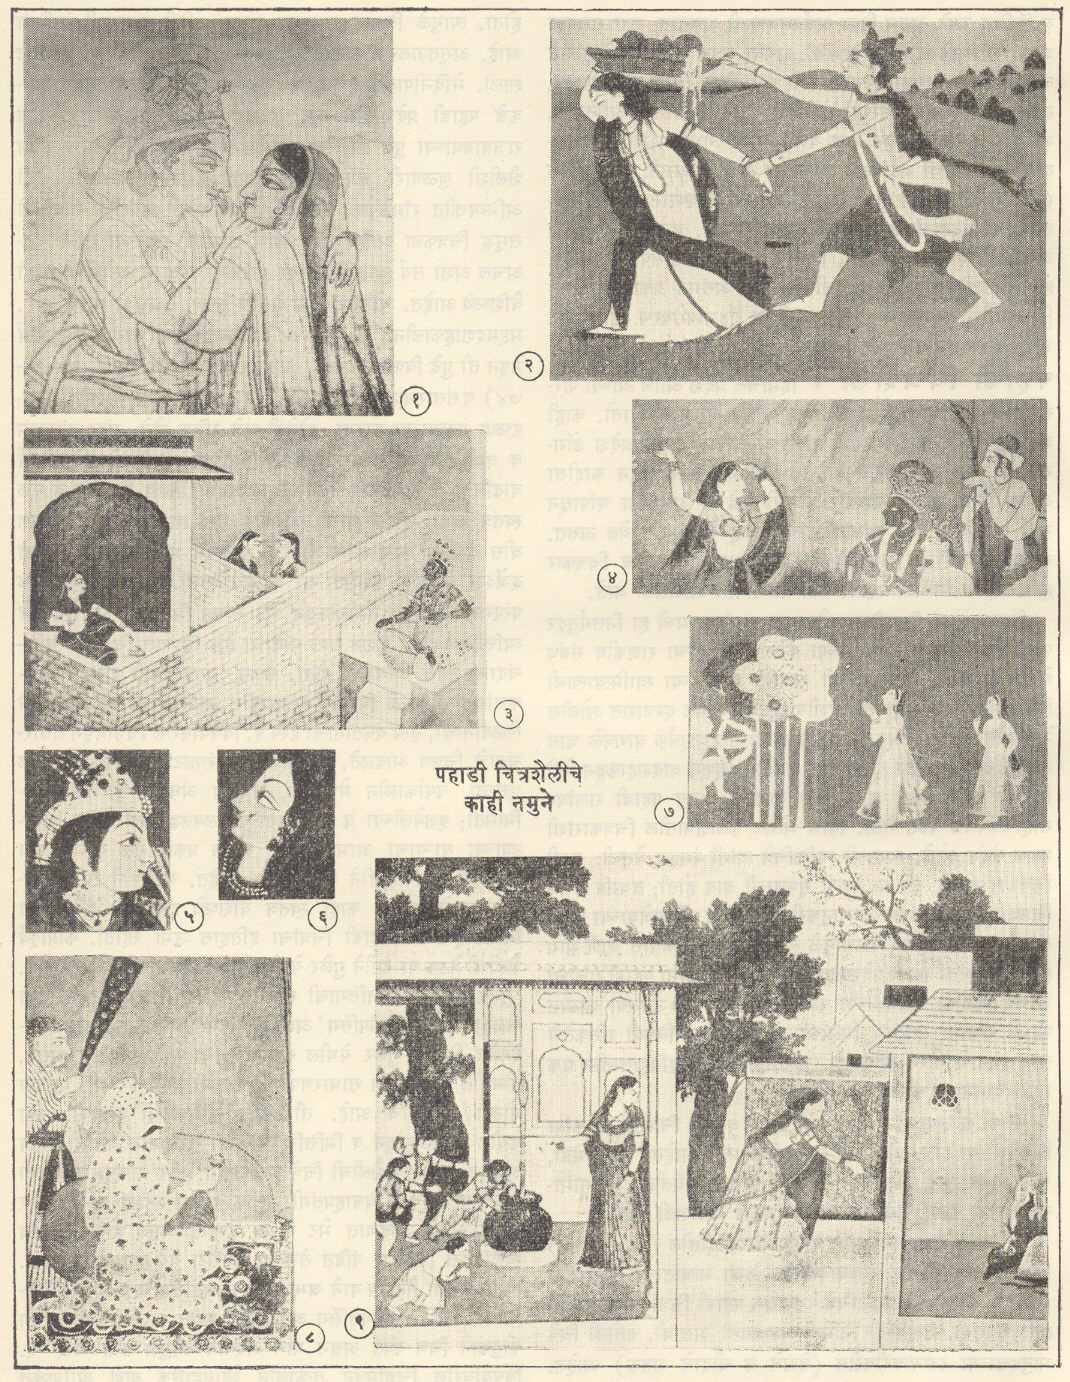 १. कृष्ण आणि राधा, कांग्रा शैली, १८२५-५०. २. दानलीला, गढवाल शैली, १९ वे शतक. ३. राधेच्या घराबाहेर तिची प्रतिक्षा करणारा कृष्ण, बसोली शैली, १९३०-४०. ४. नृत्य करणारी राधा, गुलेर येथील कांग्रापूर्व शैली, सु. १७६०-७०. ५. बिलासपूर शैलीतील मुखचित्रण, सु. १७५०. ६. चंबा शैलीतील नायिकामुख, कांग्रा शैली, १८००-२५. ७ विप्रलब्धा, बसोली शैली, सु. १७२०. ८. गुलेरचा राजा मानसिंग, गुलेर शैली, १८ वे शतक. ९. माखनचोर, कांग्रा शैली, १७८०-१८००.